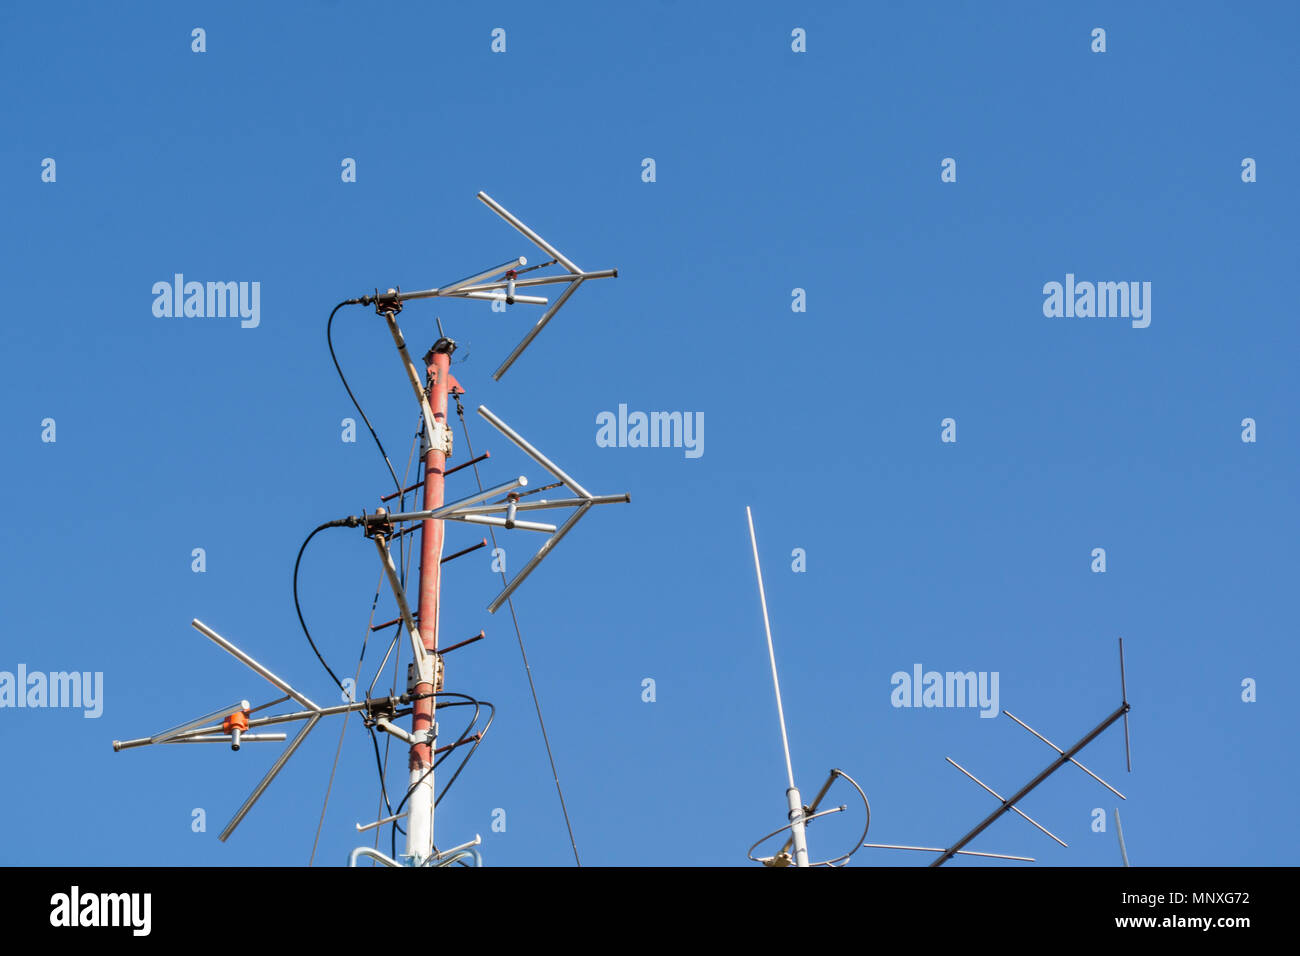 Professional Radio FM antenne per stazione radio sulla costruzione di tetto e cielo blu in background Foto Stock